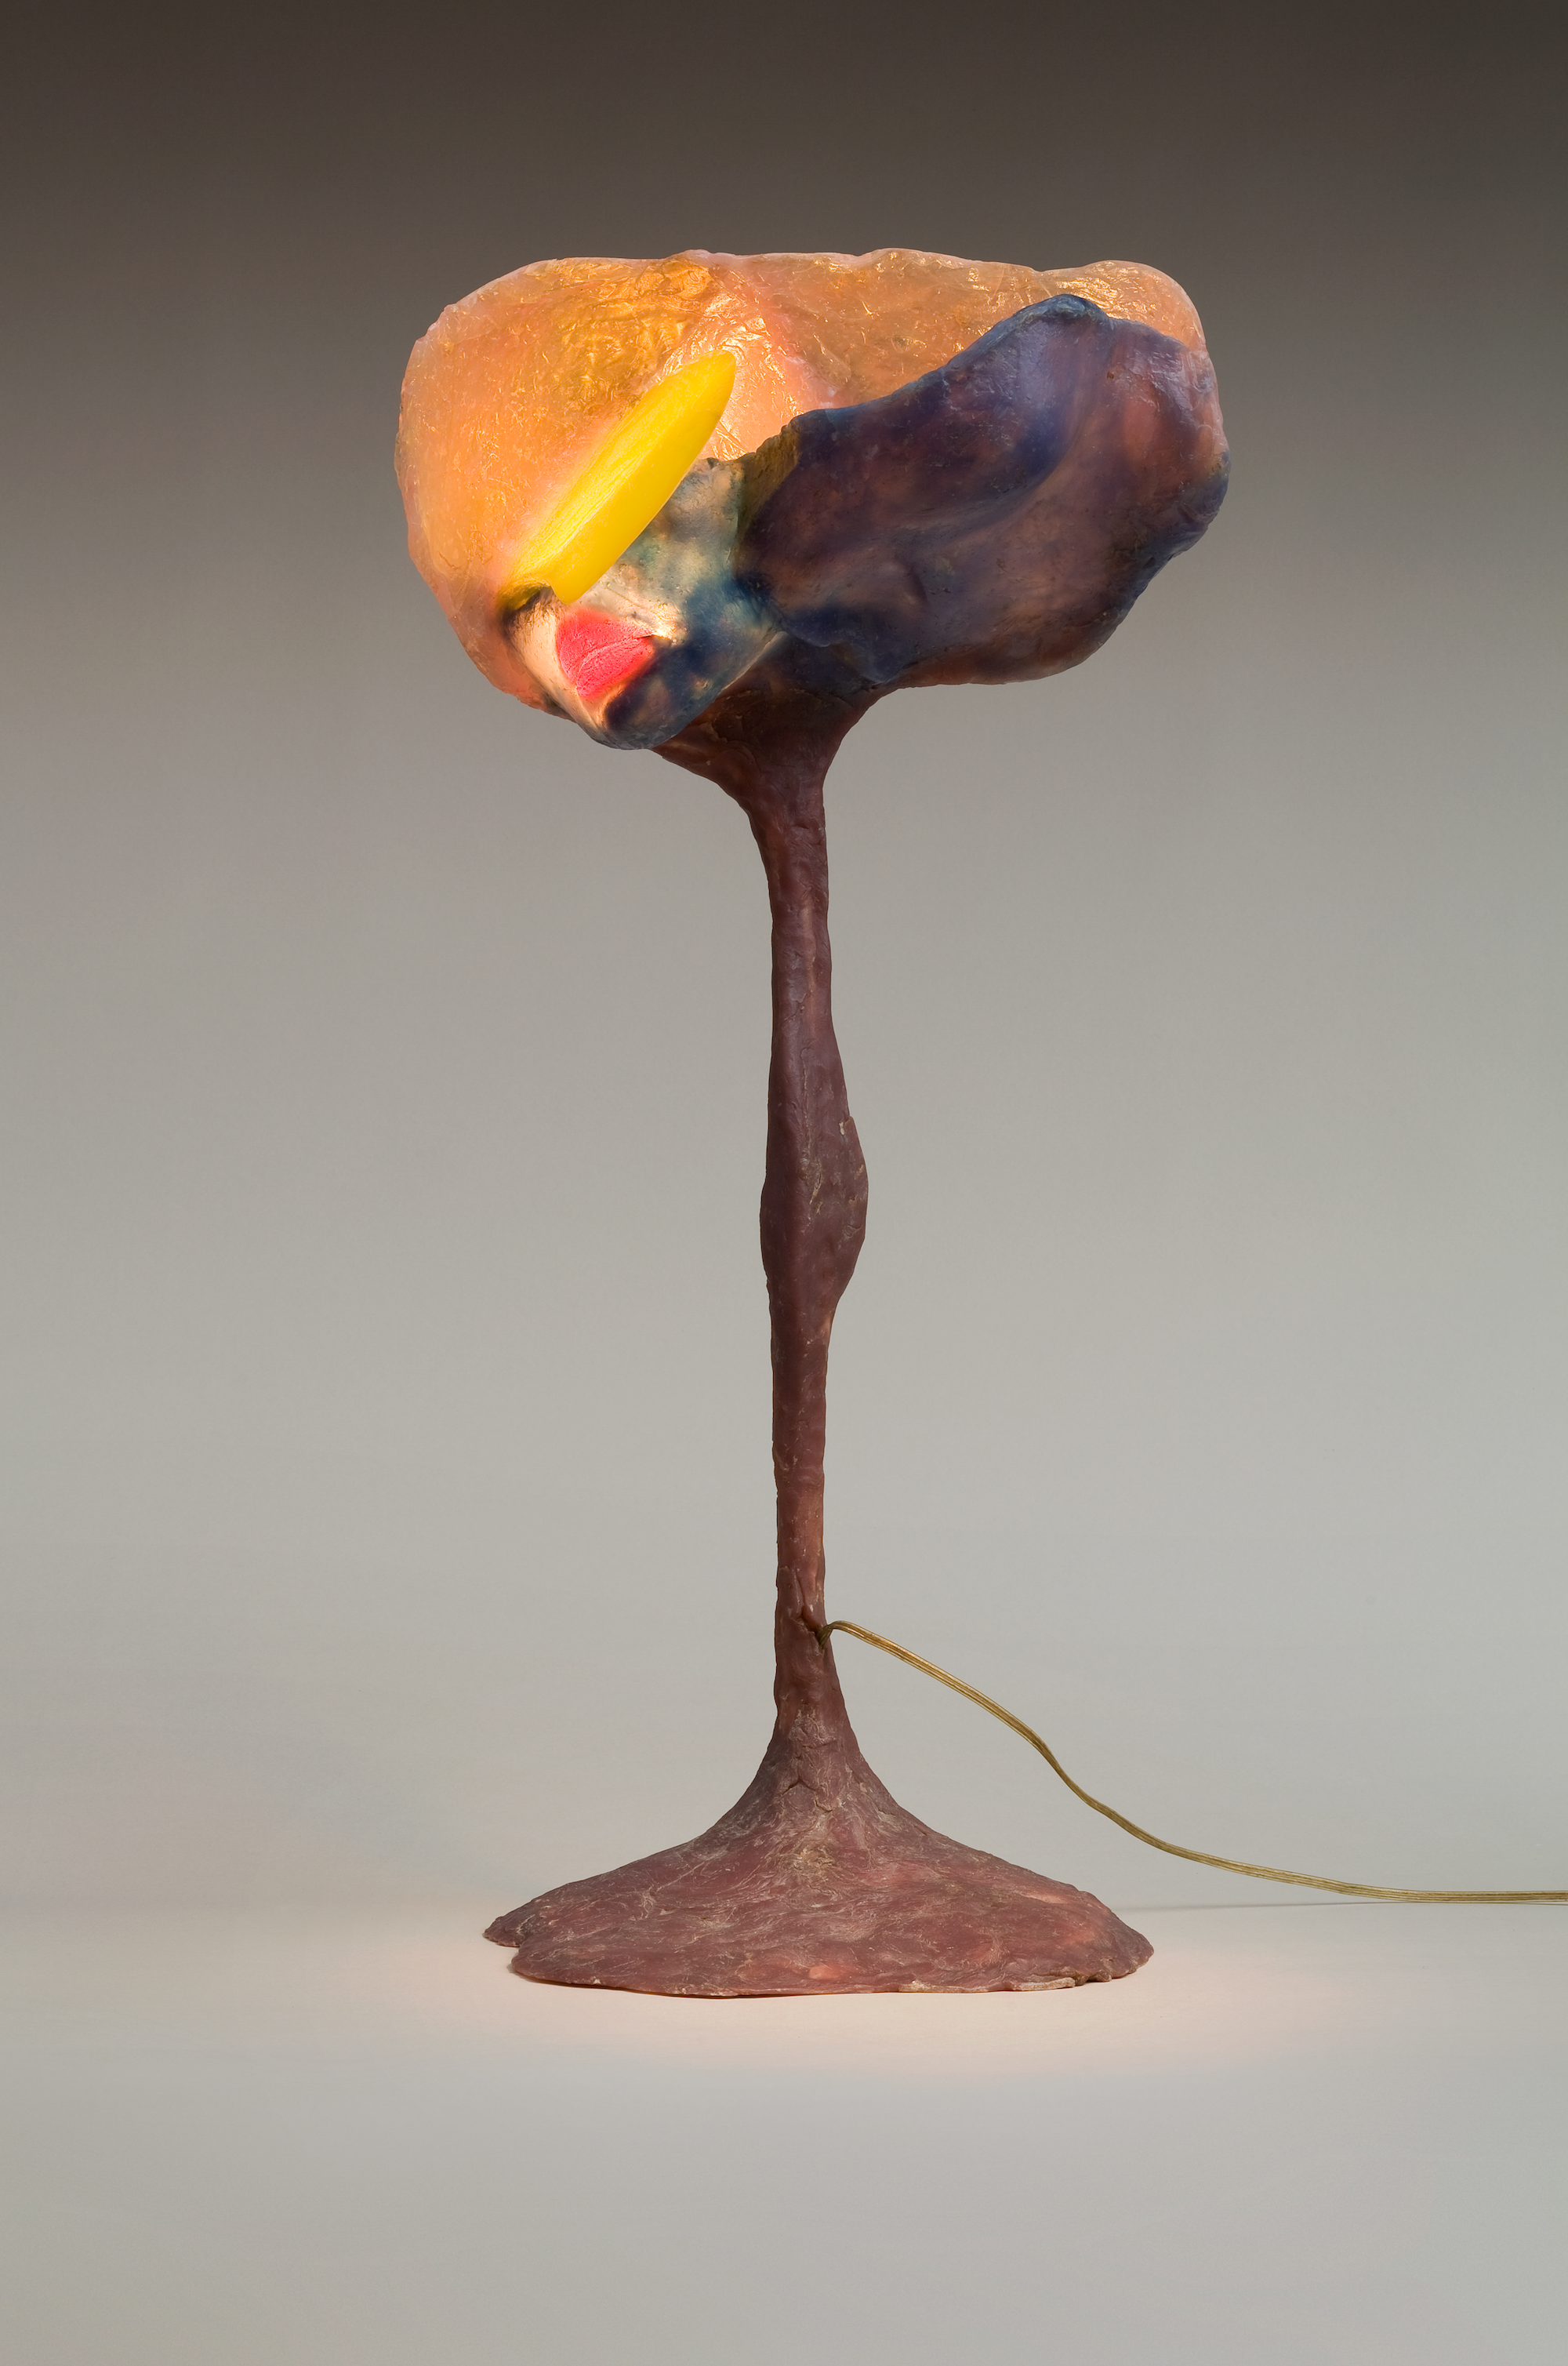 Lampa by Alina Szapocznikow - 1967 - 72 × 30 cm 